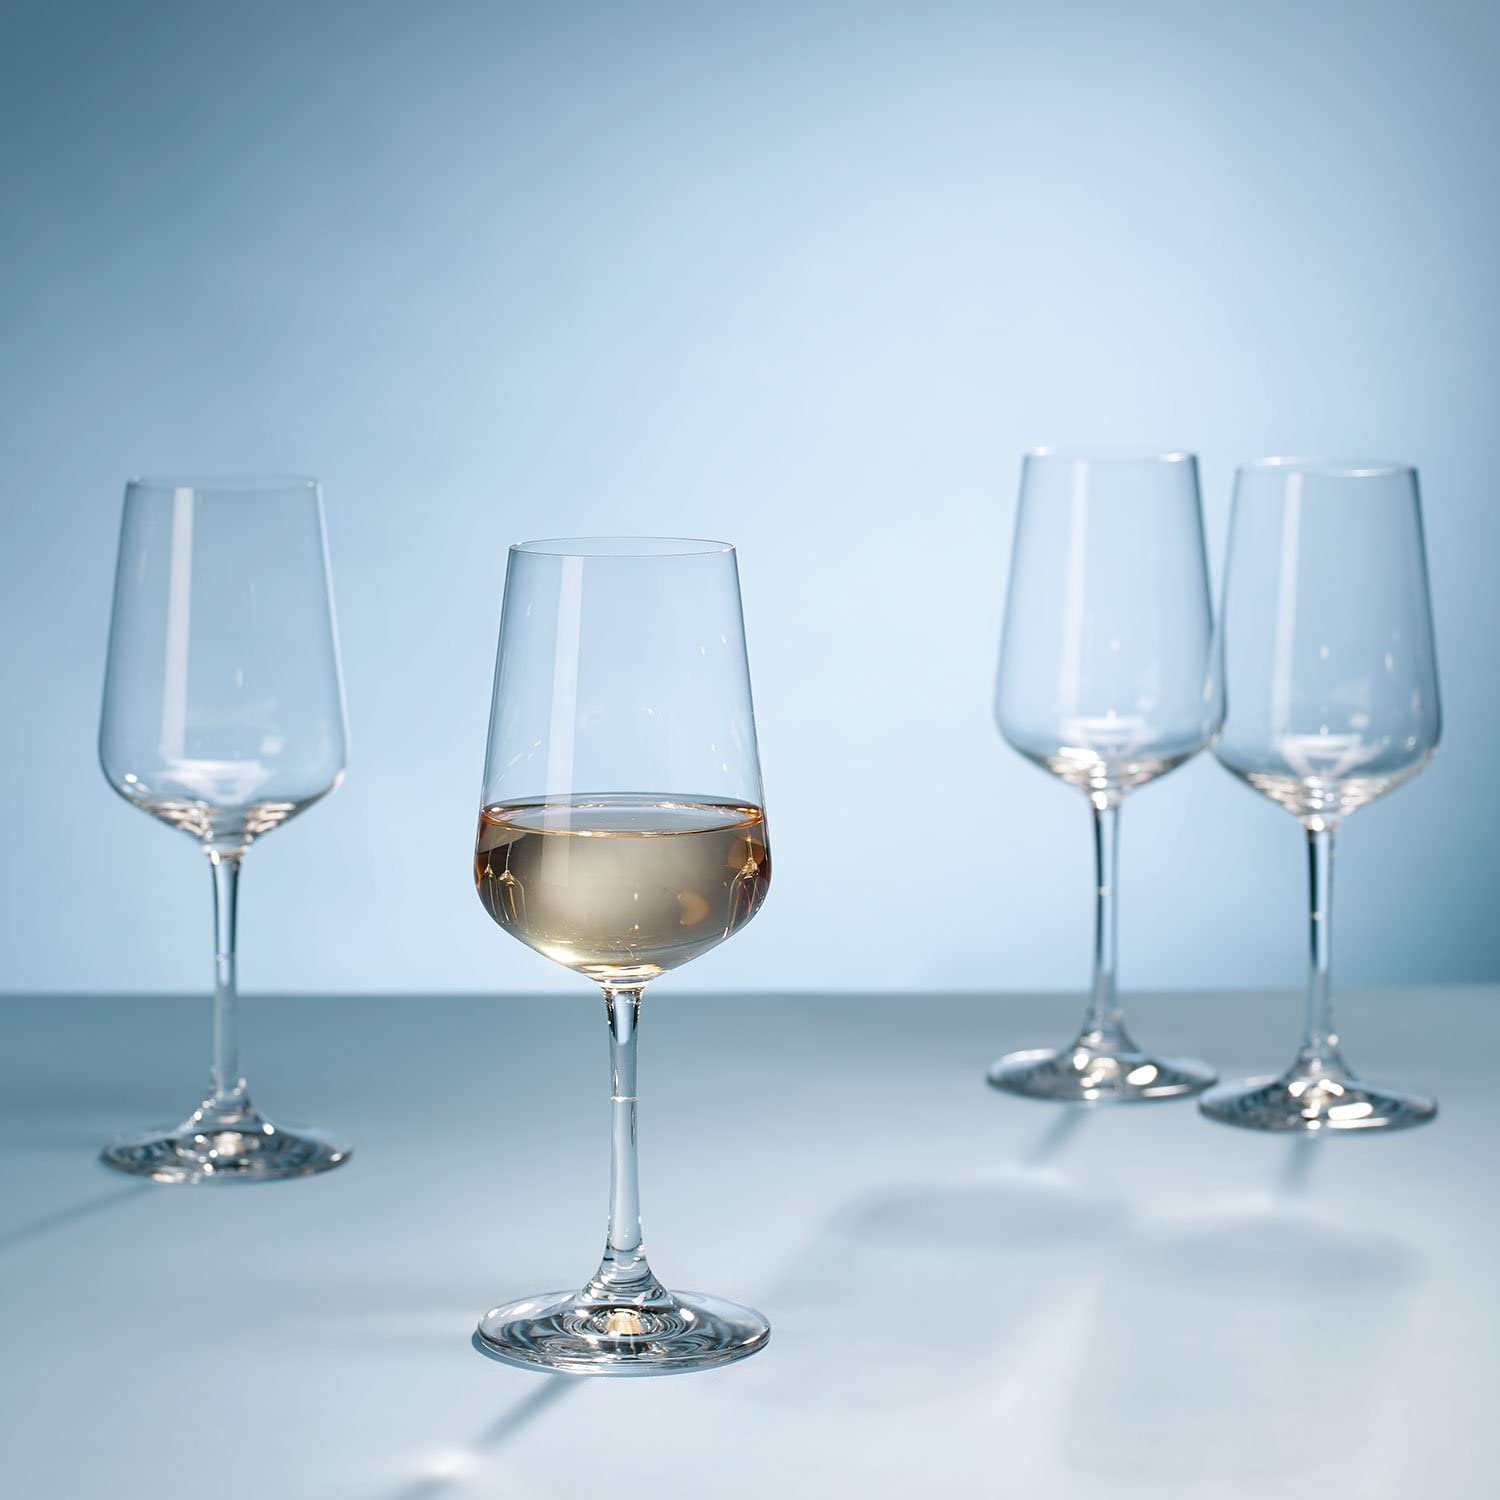 Villeroy & Boch Ovid Bicchiere Calice da Vino Bianco 380ml Cristallo Set 4 Pezzi.